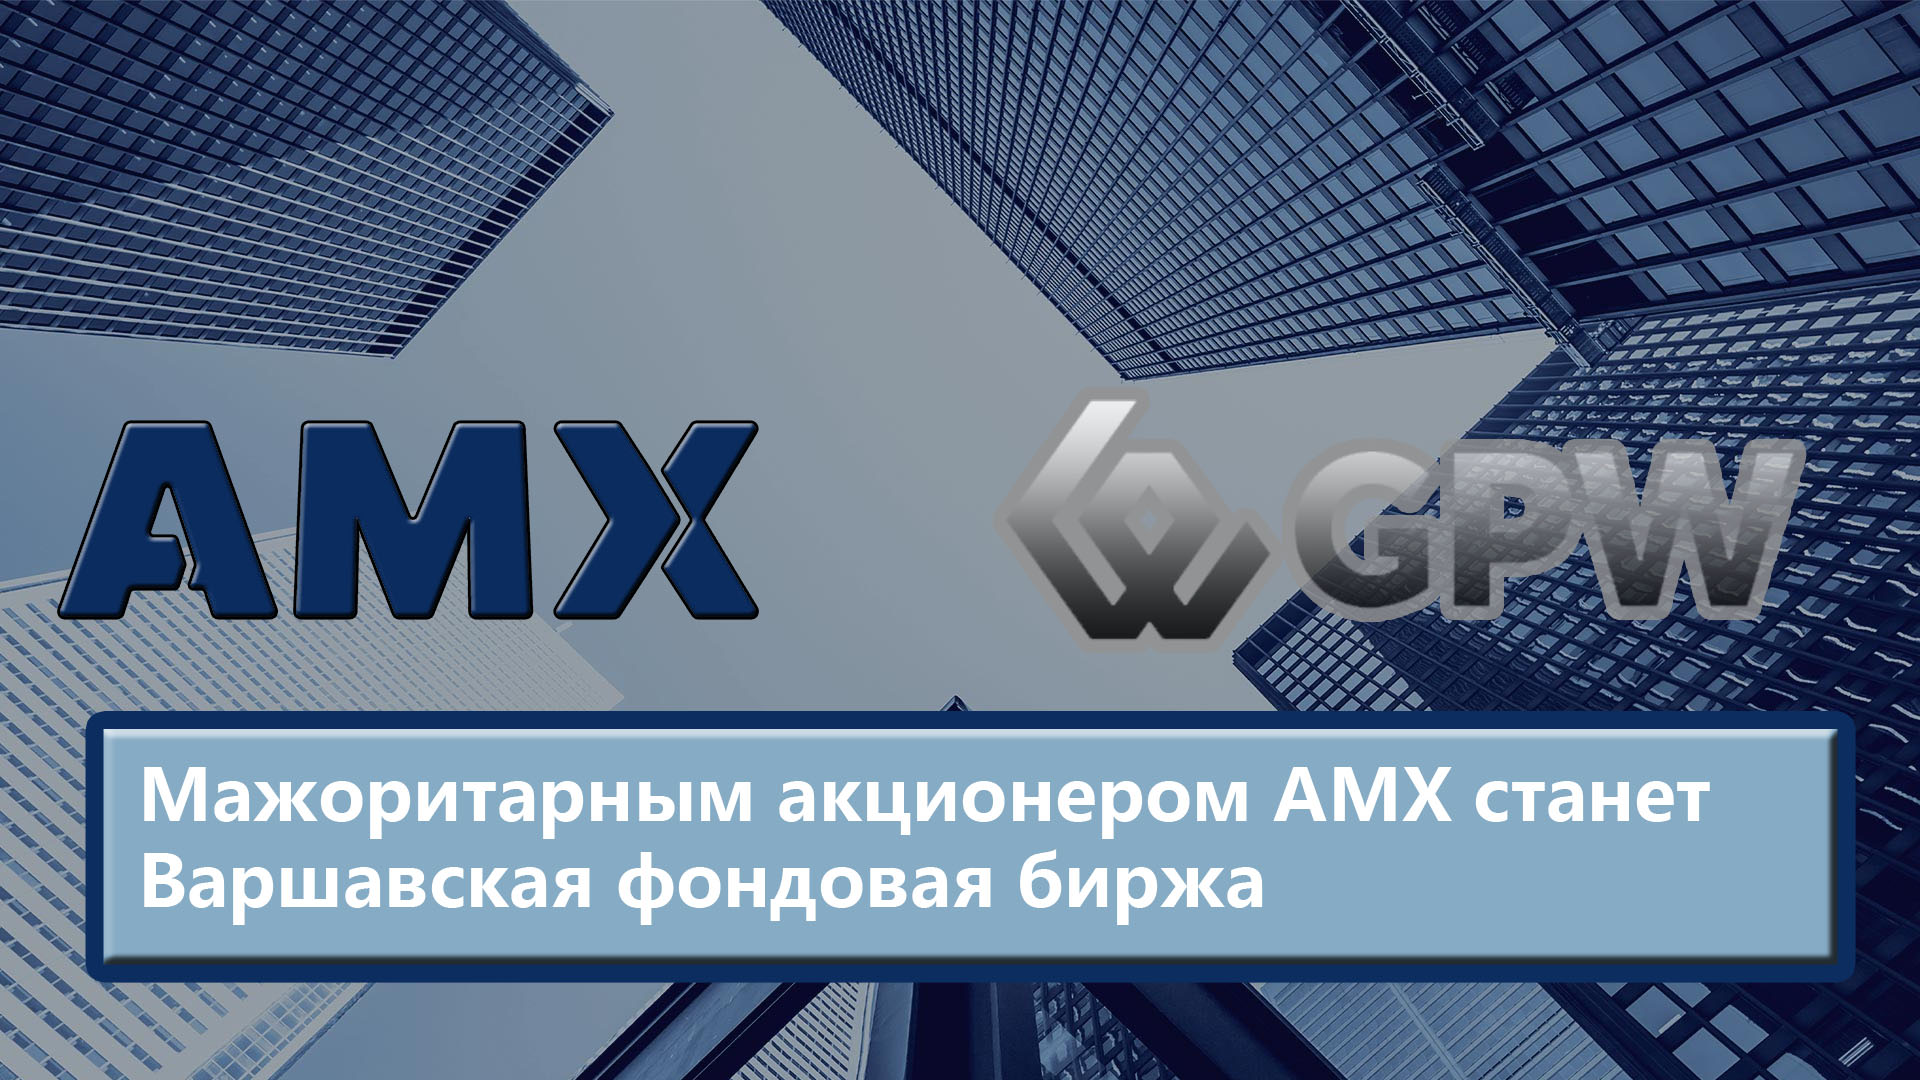 Мажоритарным акционером АМХ станет Варшавская фондовая биржа